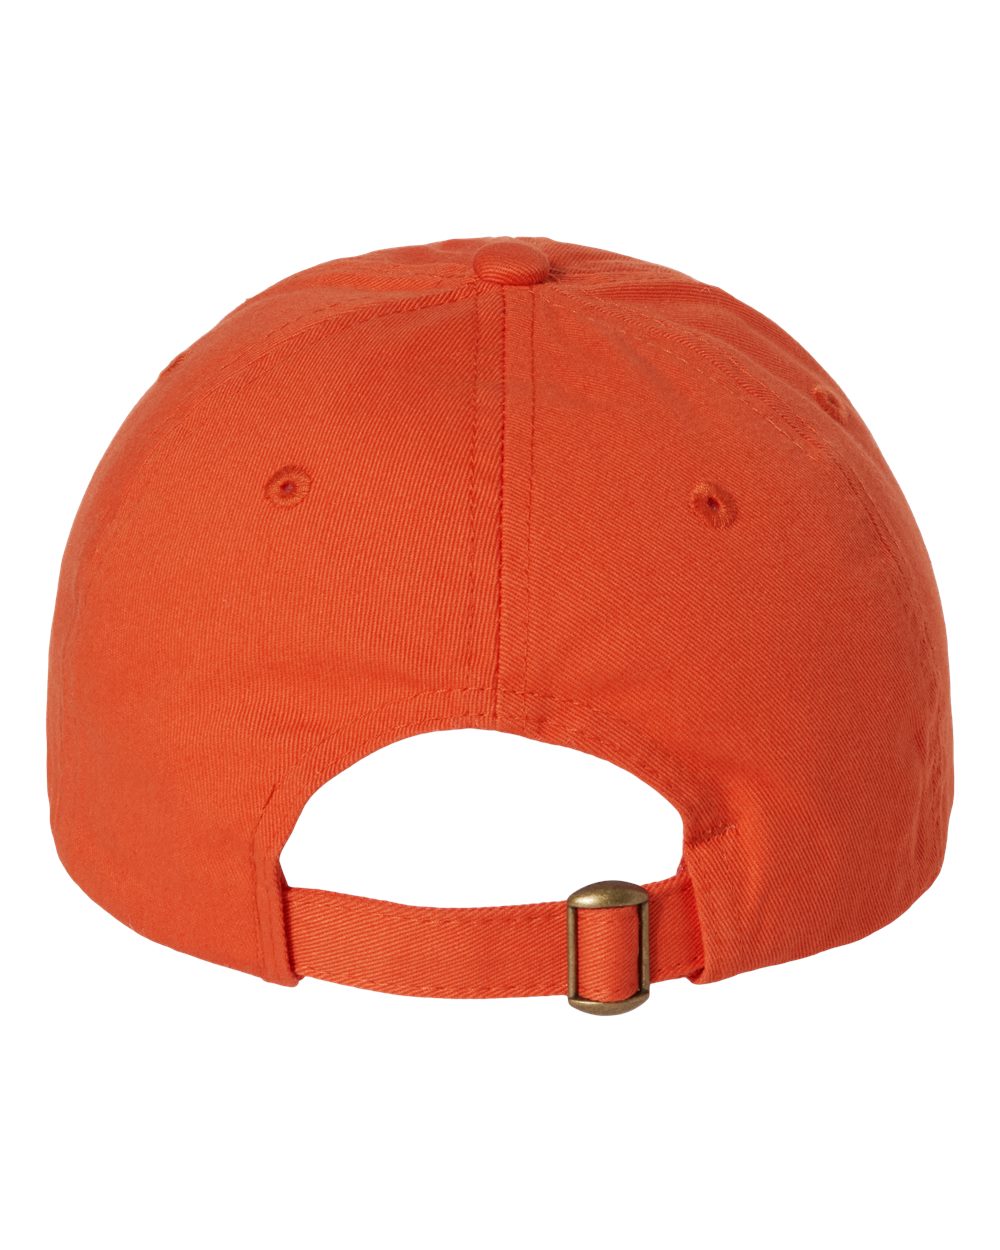 Orange PF Unstructured Hat